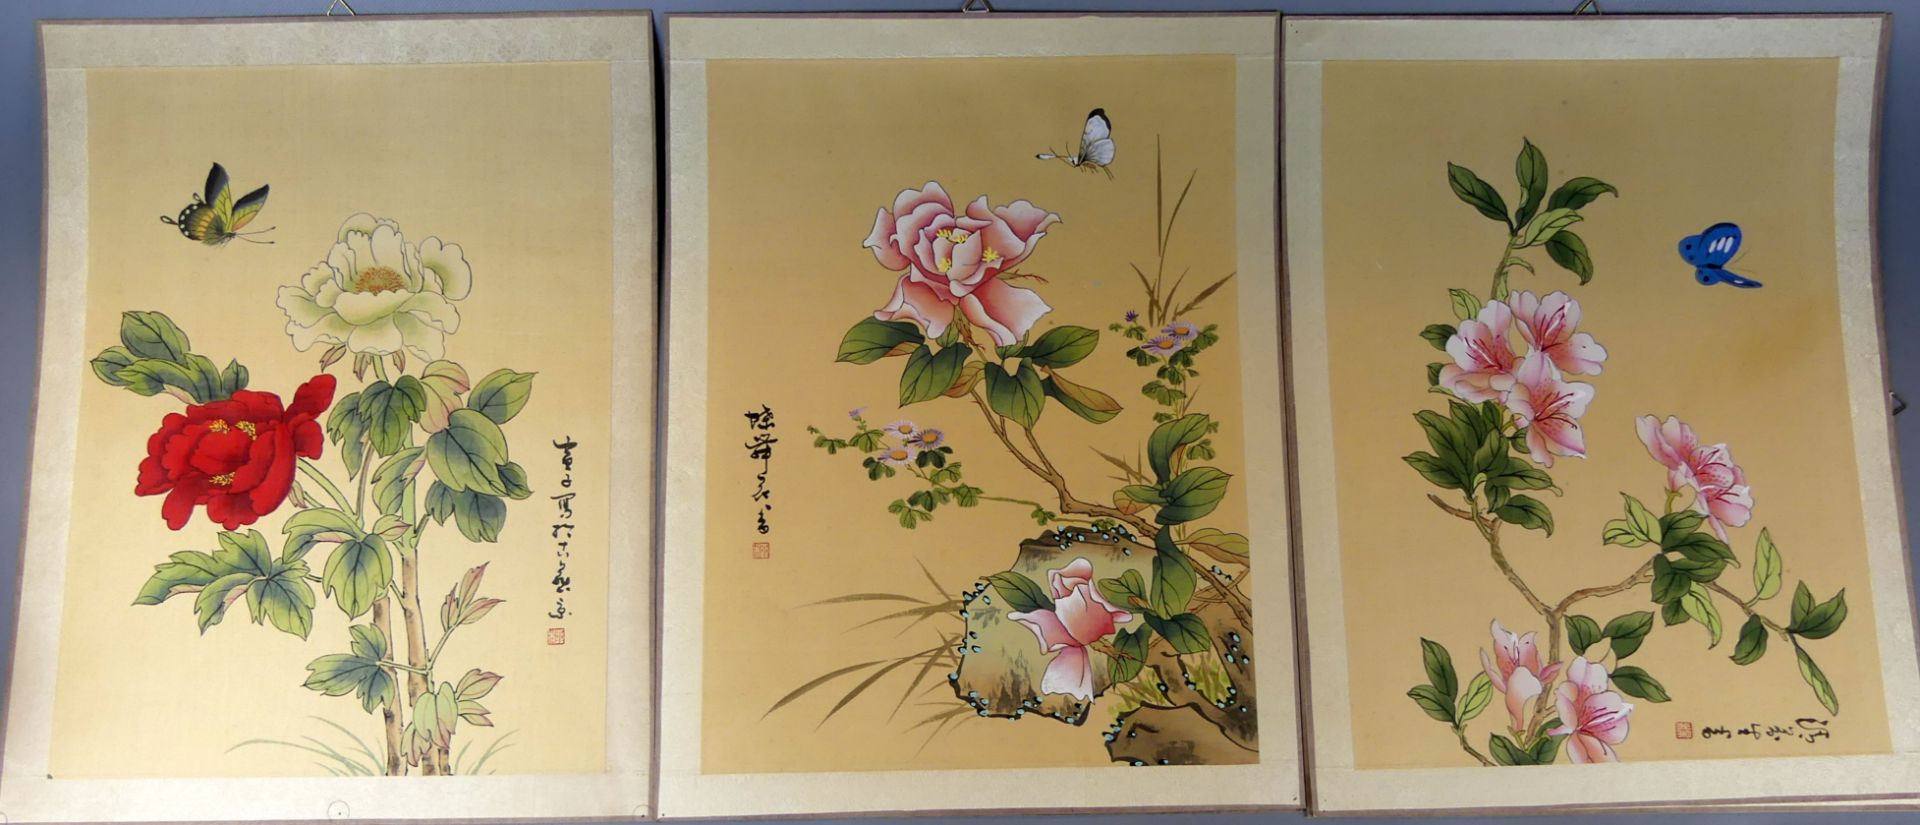 Konvolut von 5 asiatischen Seidenbildern, Aquarell/Papier, Blumen mit